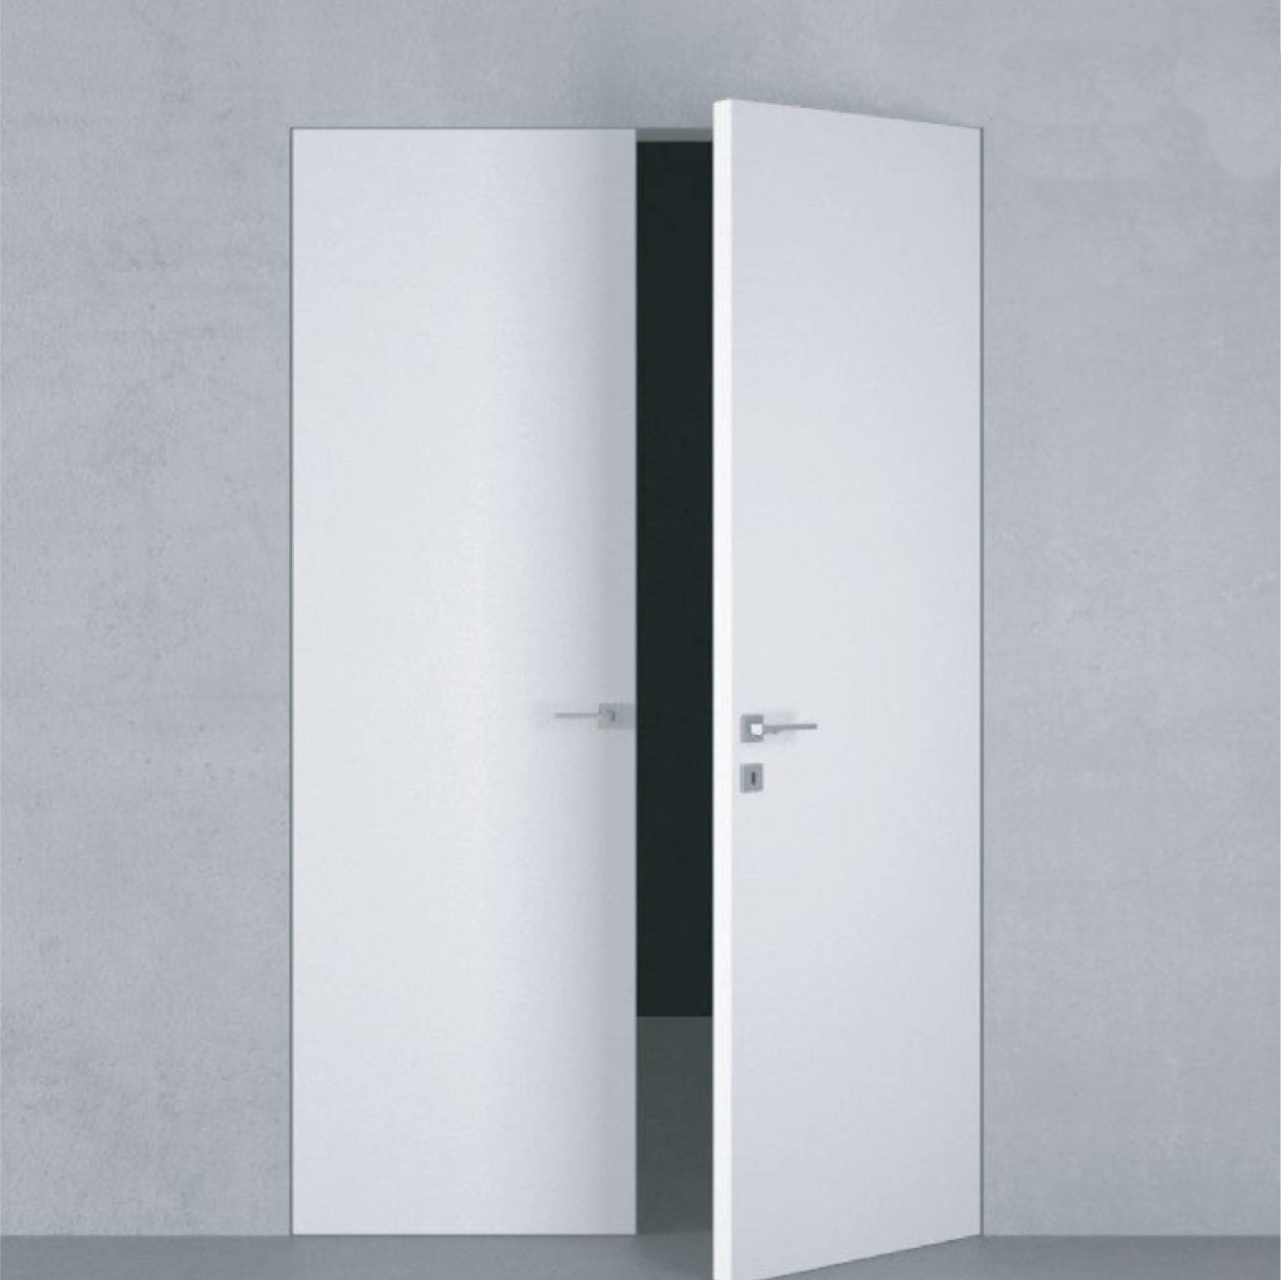 Двери скрытого монтажа в каталоге PORTES - две открытые белые двери со скрытыми петлями и современными ручками на фоне однотонной серой стены, создающие эстетику минимализма и современного дизайна.